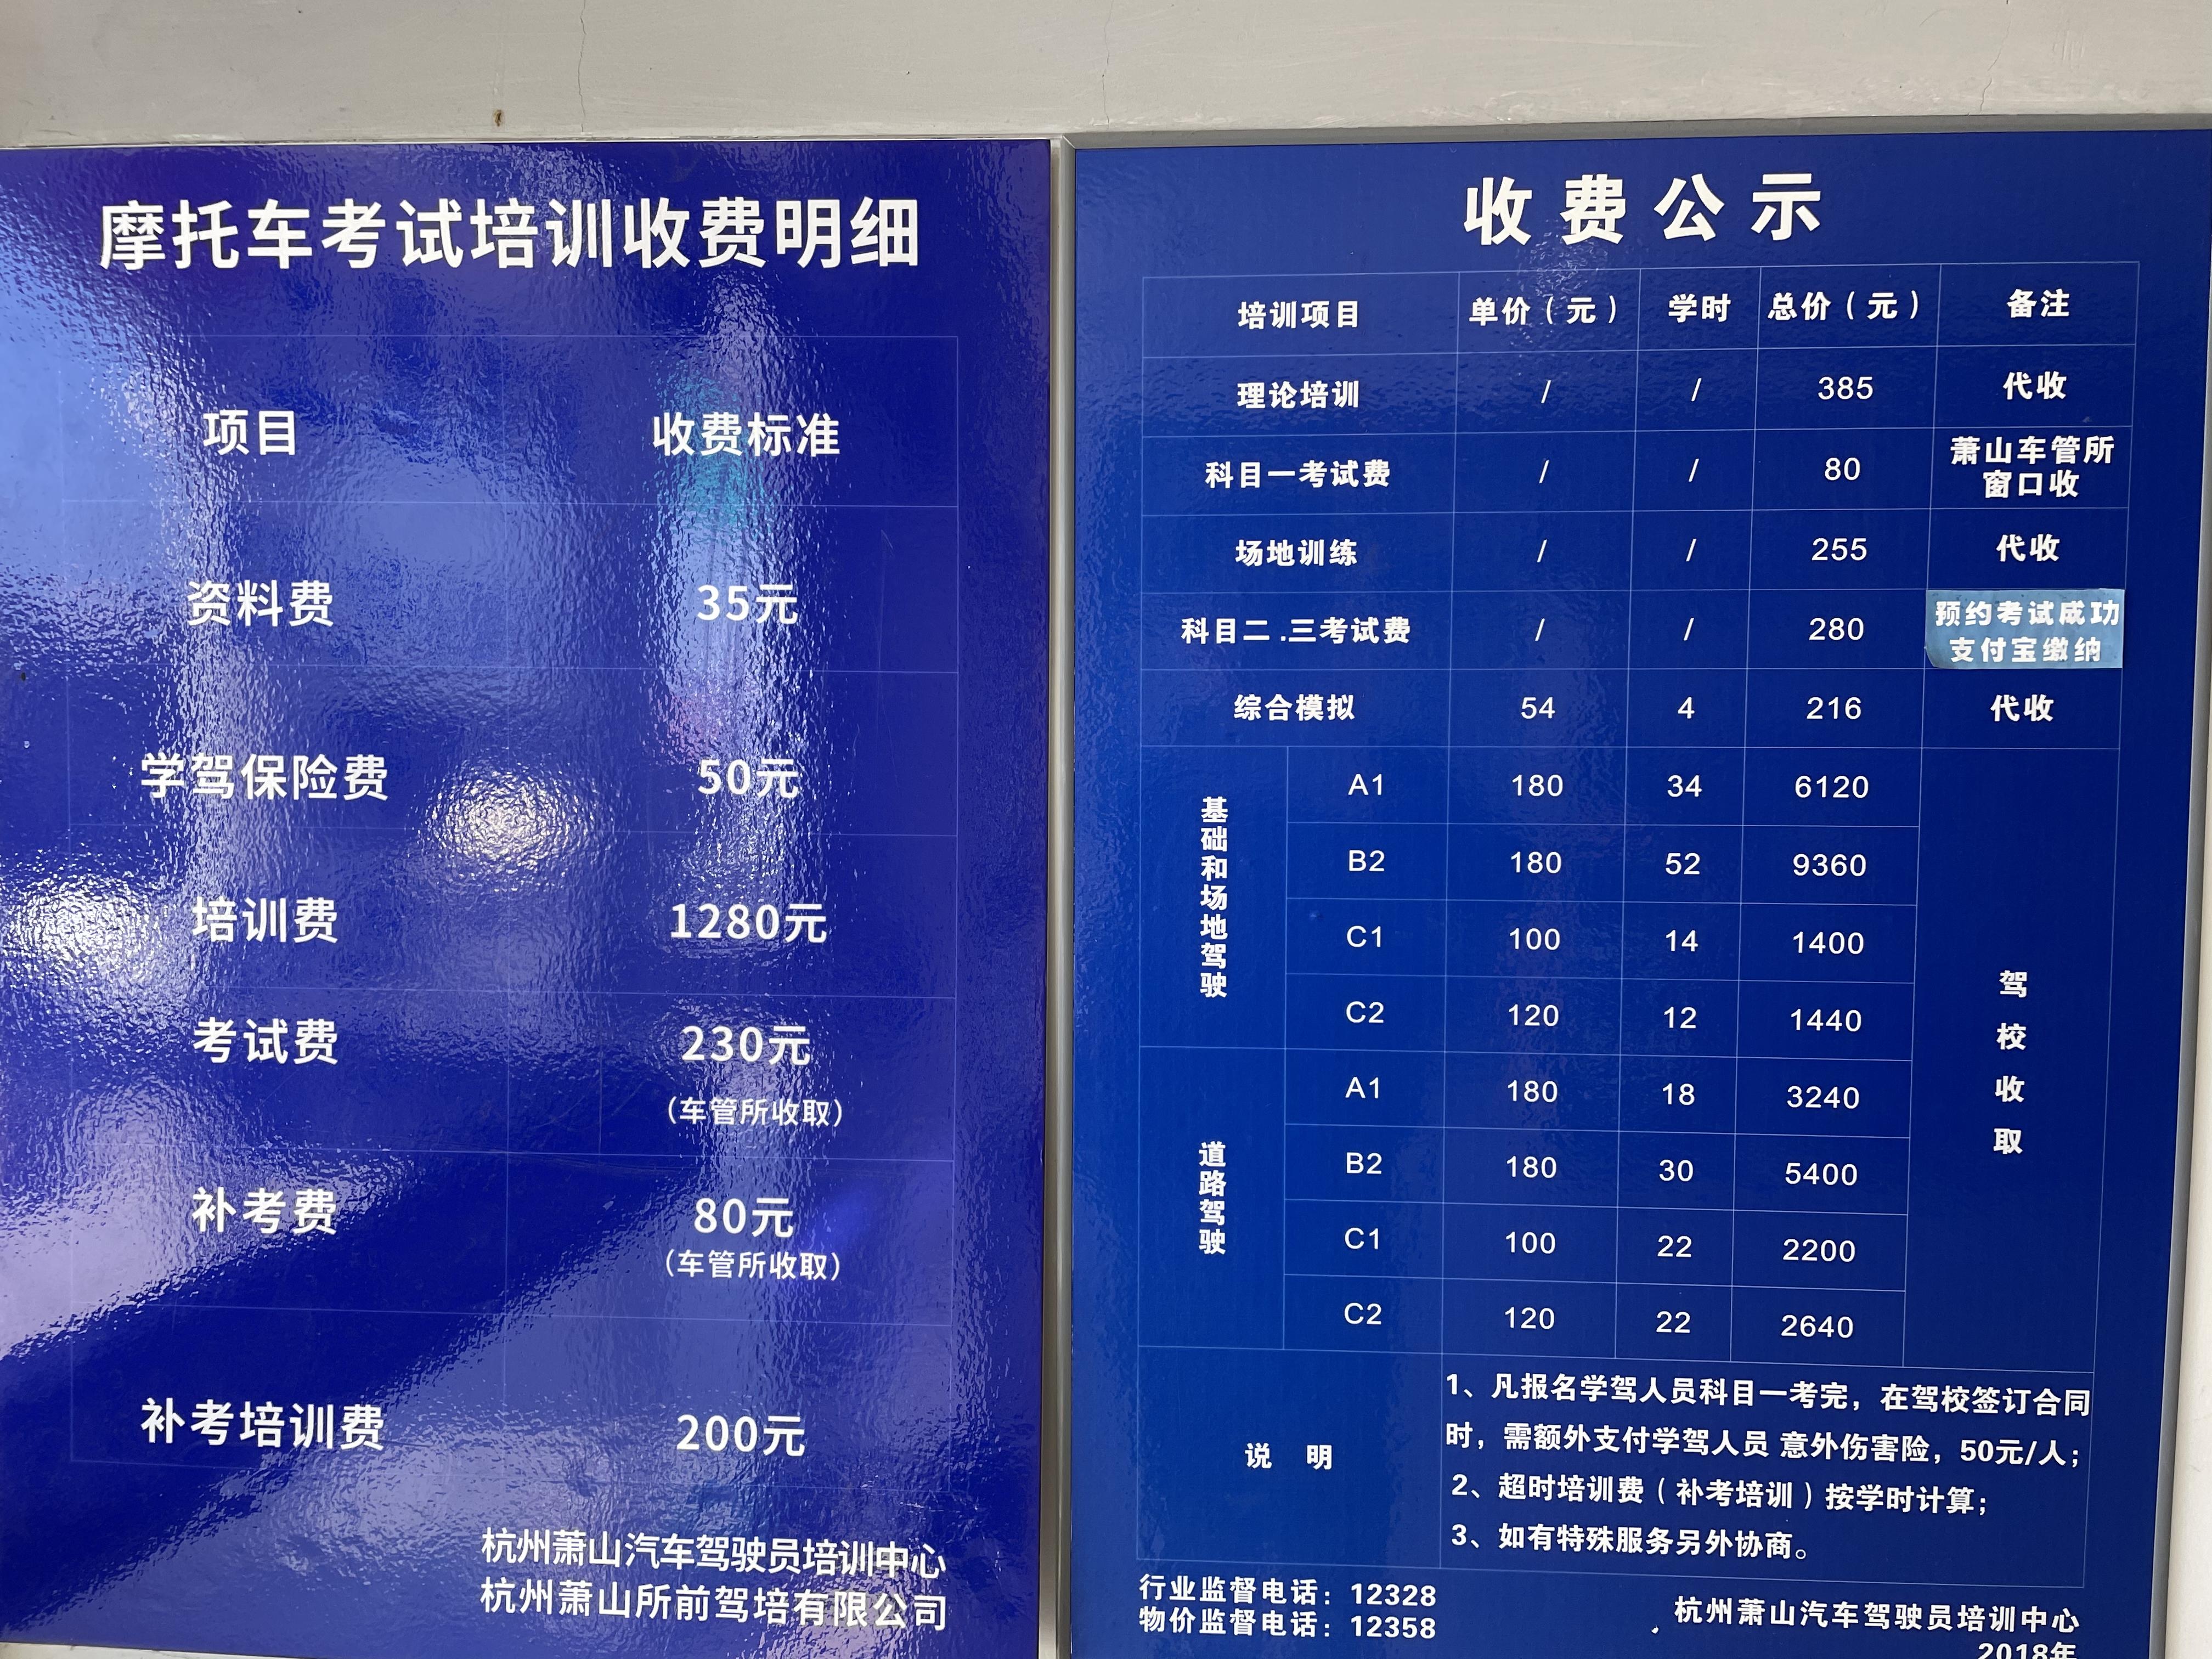 上海摩托车牌照价格走势|66个相关价格表-慧博投研资讯